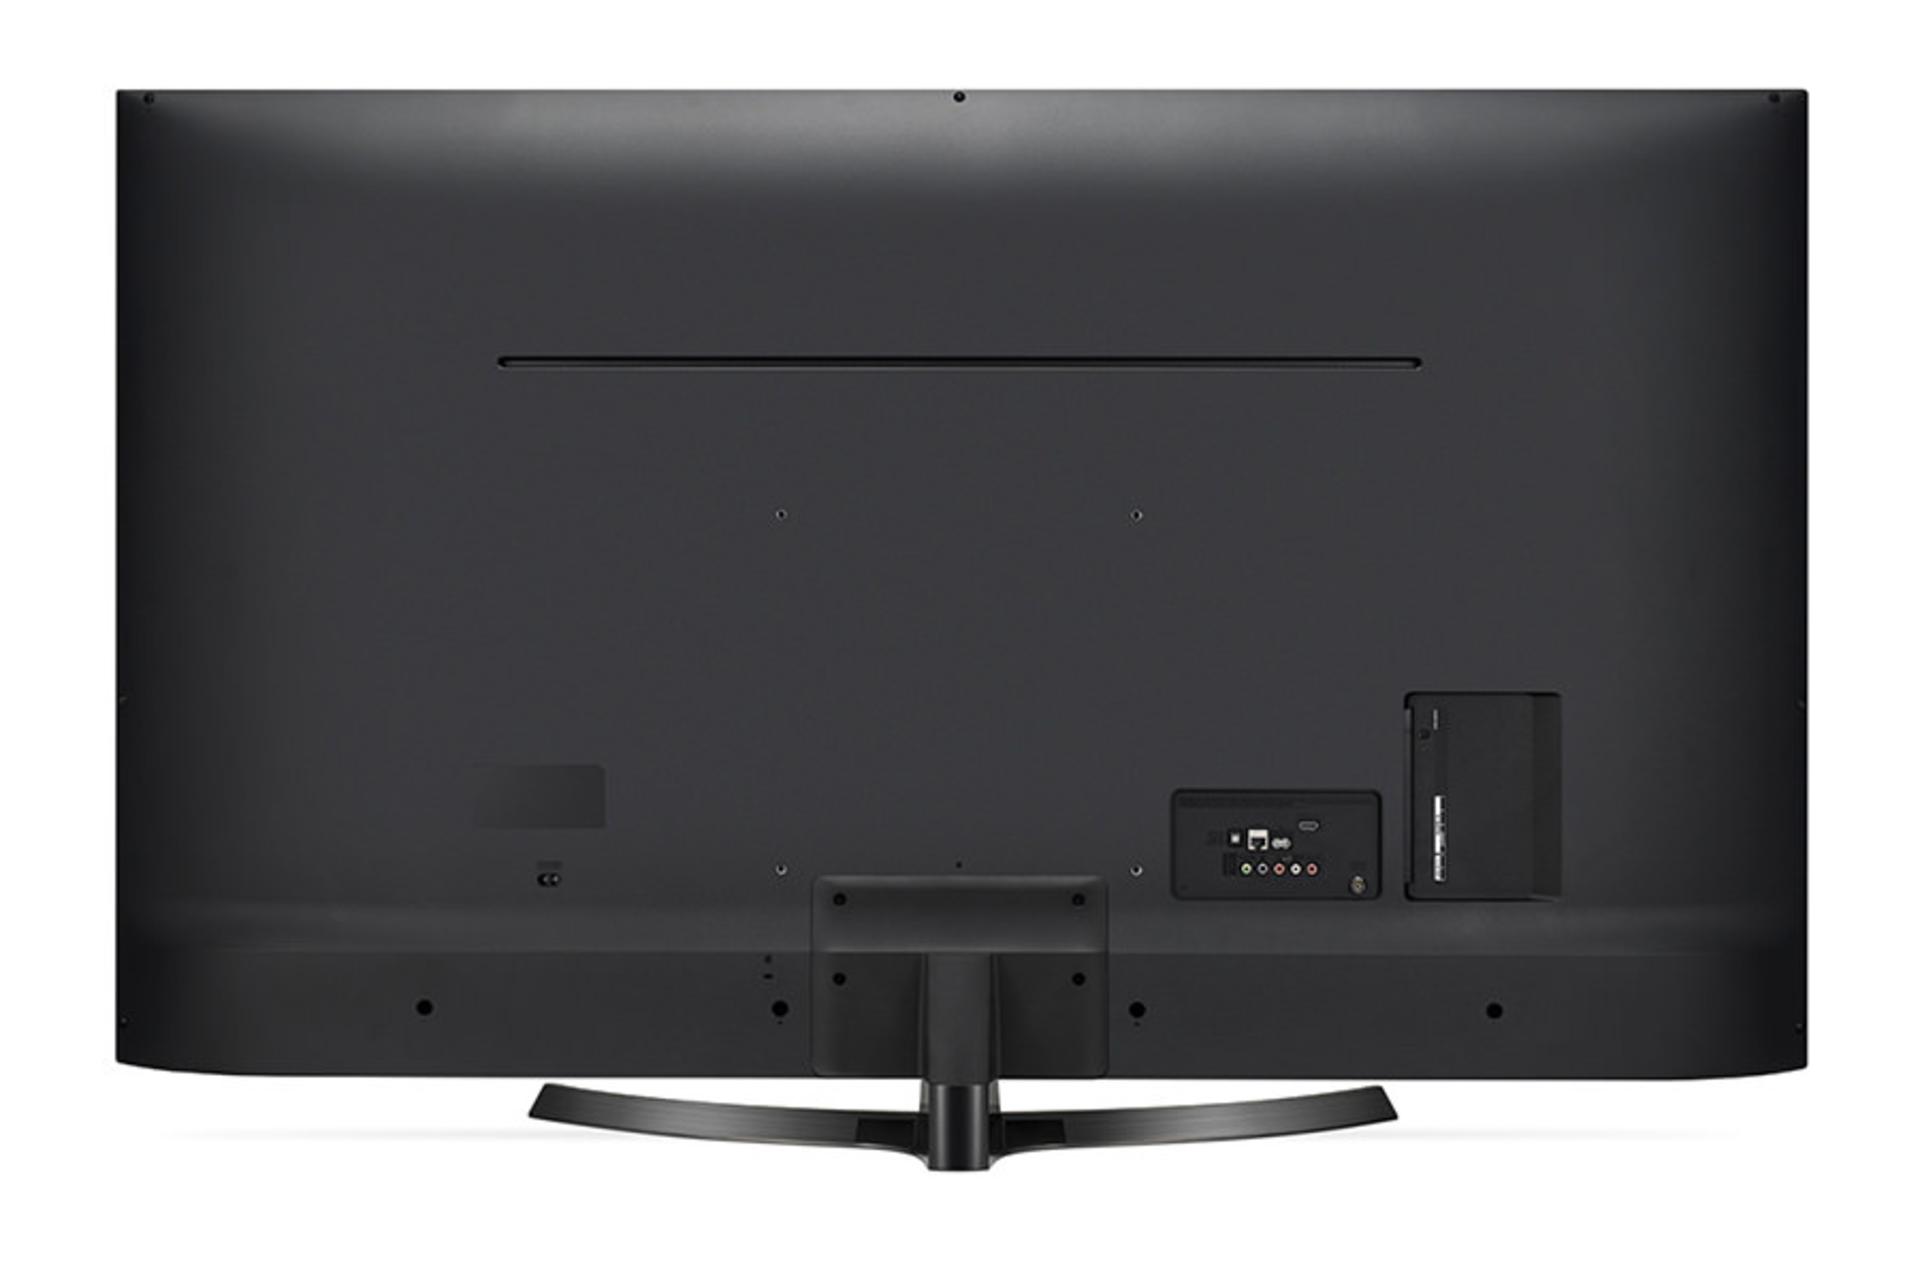 نمای طراحی پشت تلویزیون ال جی LG UK6400 مدل 49 اینچ و نمایش پورت ها